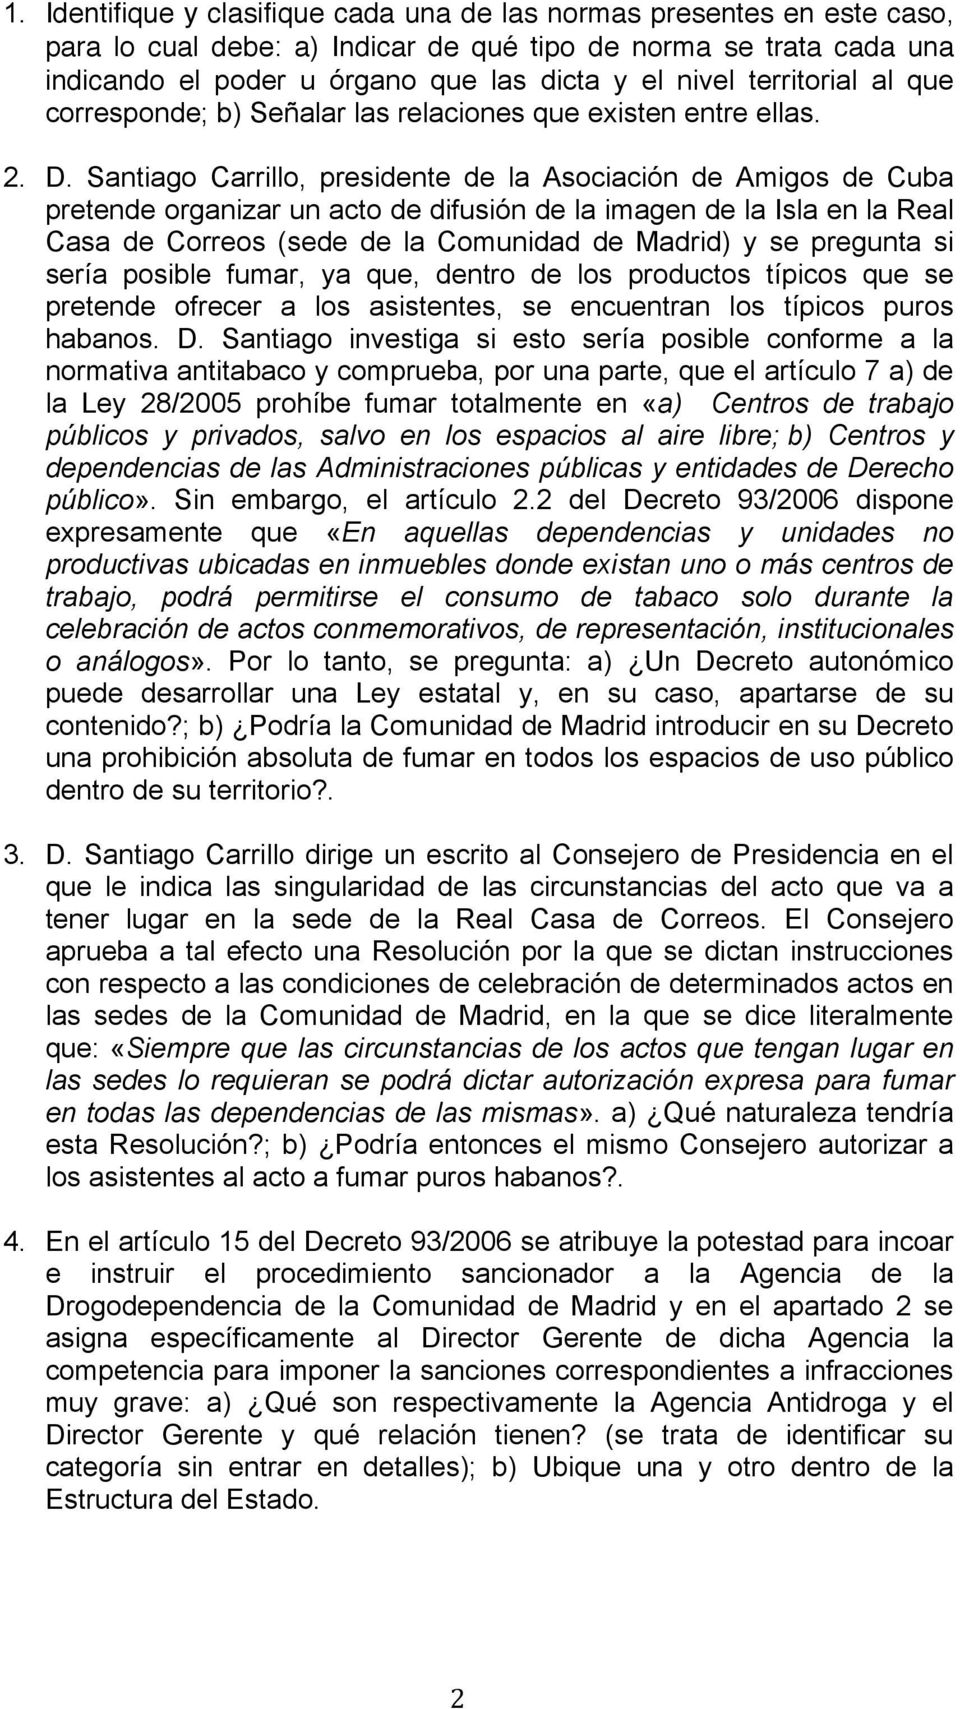 Santiago Carrillo, presidente de la Asociación de Amigos de Cuba pretende organizar un acto de difusión de la imagen de la Isla en la Real Casa de Correos (sede de la Comunidad de Madrid) y se